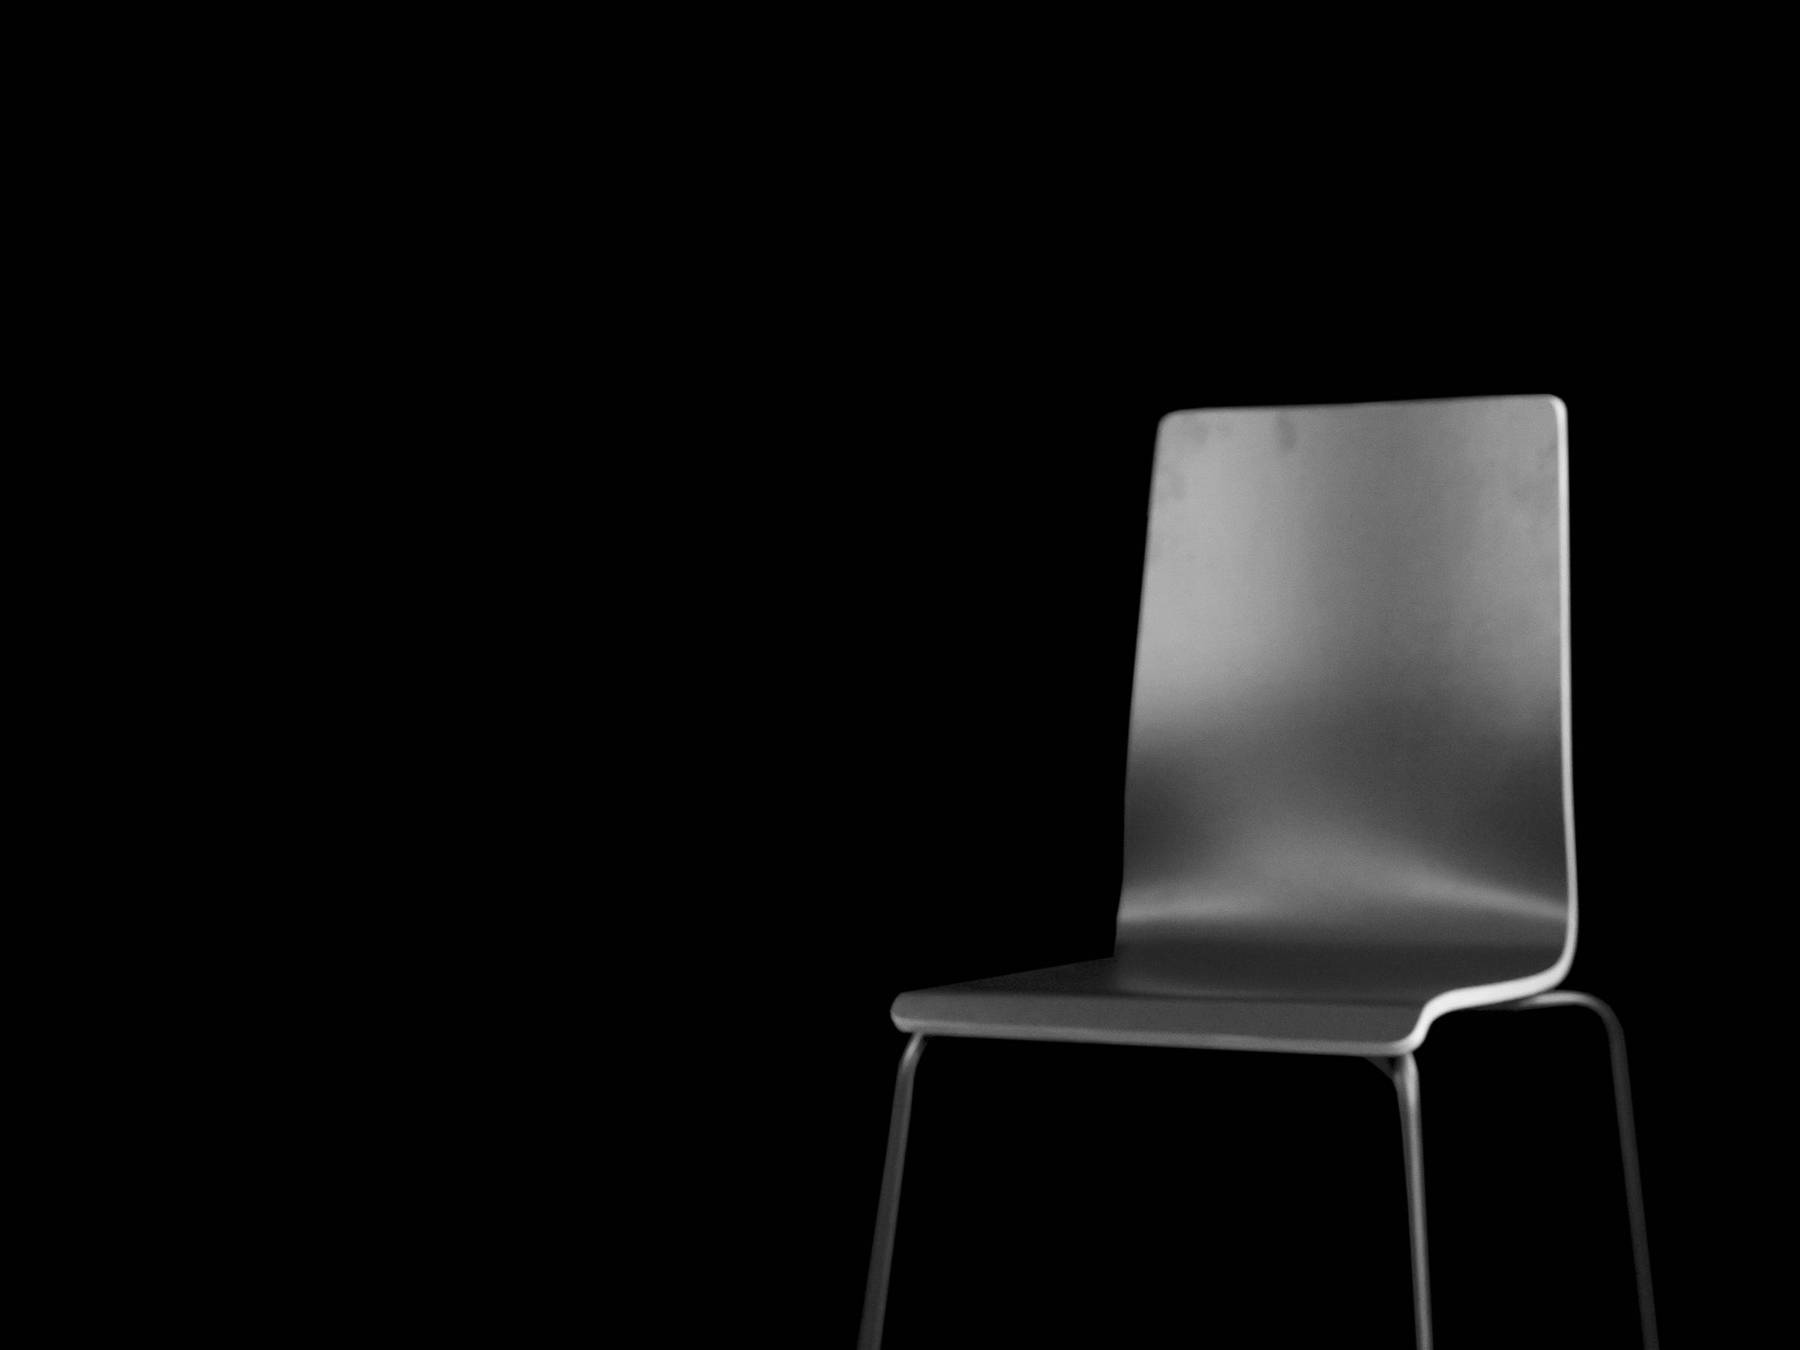 Fotografie, schwarz-weiß, von 2022: Das Foto zeigt einen leeren schwarzen Raum. Im Vordergrund sieht man links ein Mikrophon zur Tonaufnahme und rechts einen leeren Stuhl. 